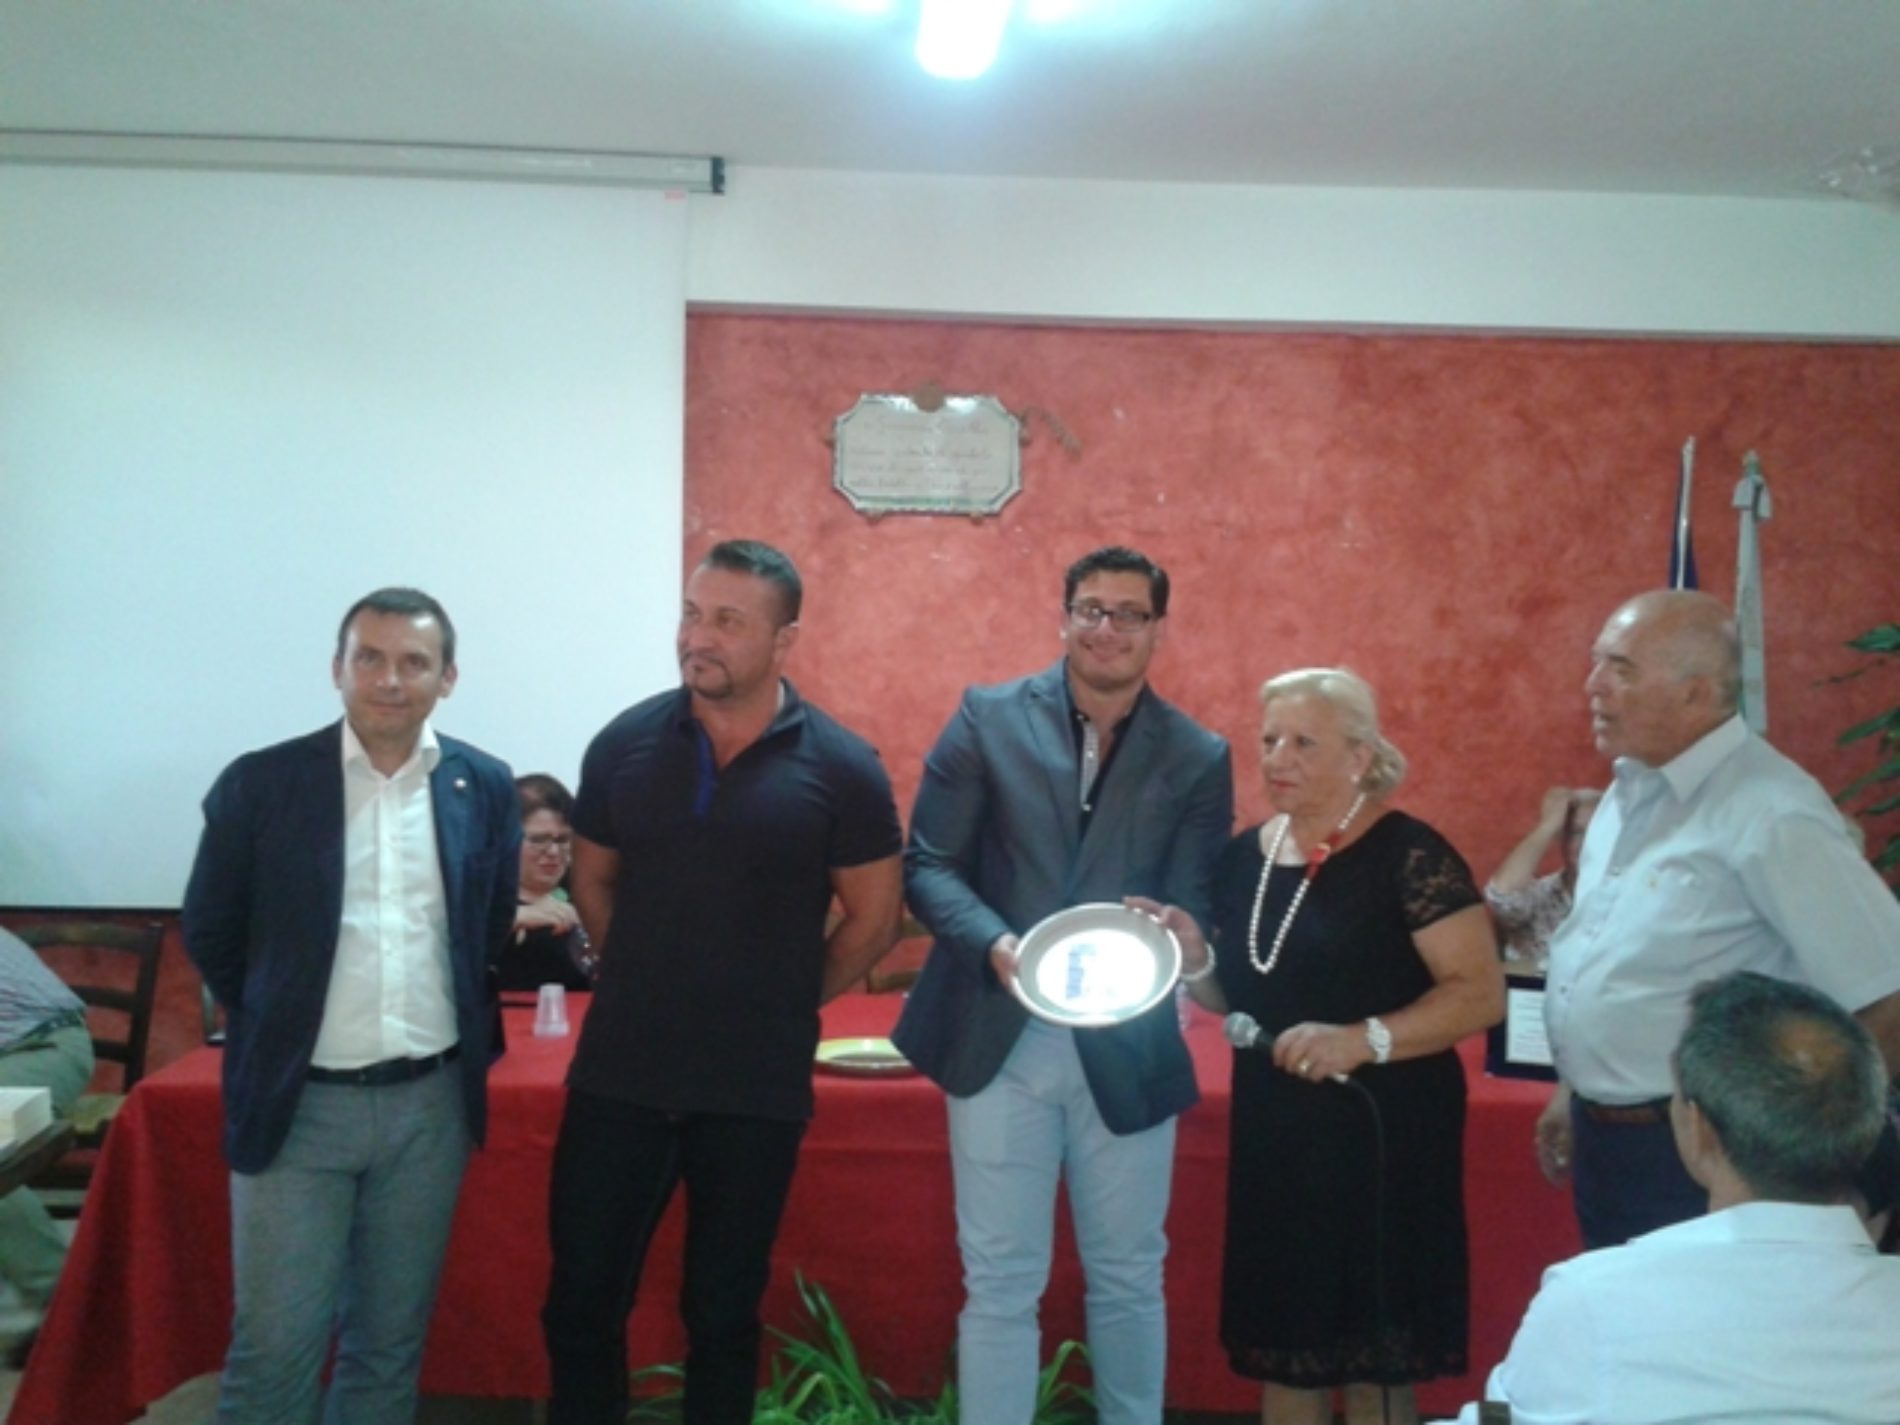 Barrafranca. Due Eccellenze barresi premiate dalla “Associazione Italiani in Patria e nel Mondo”